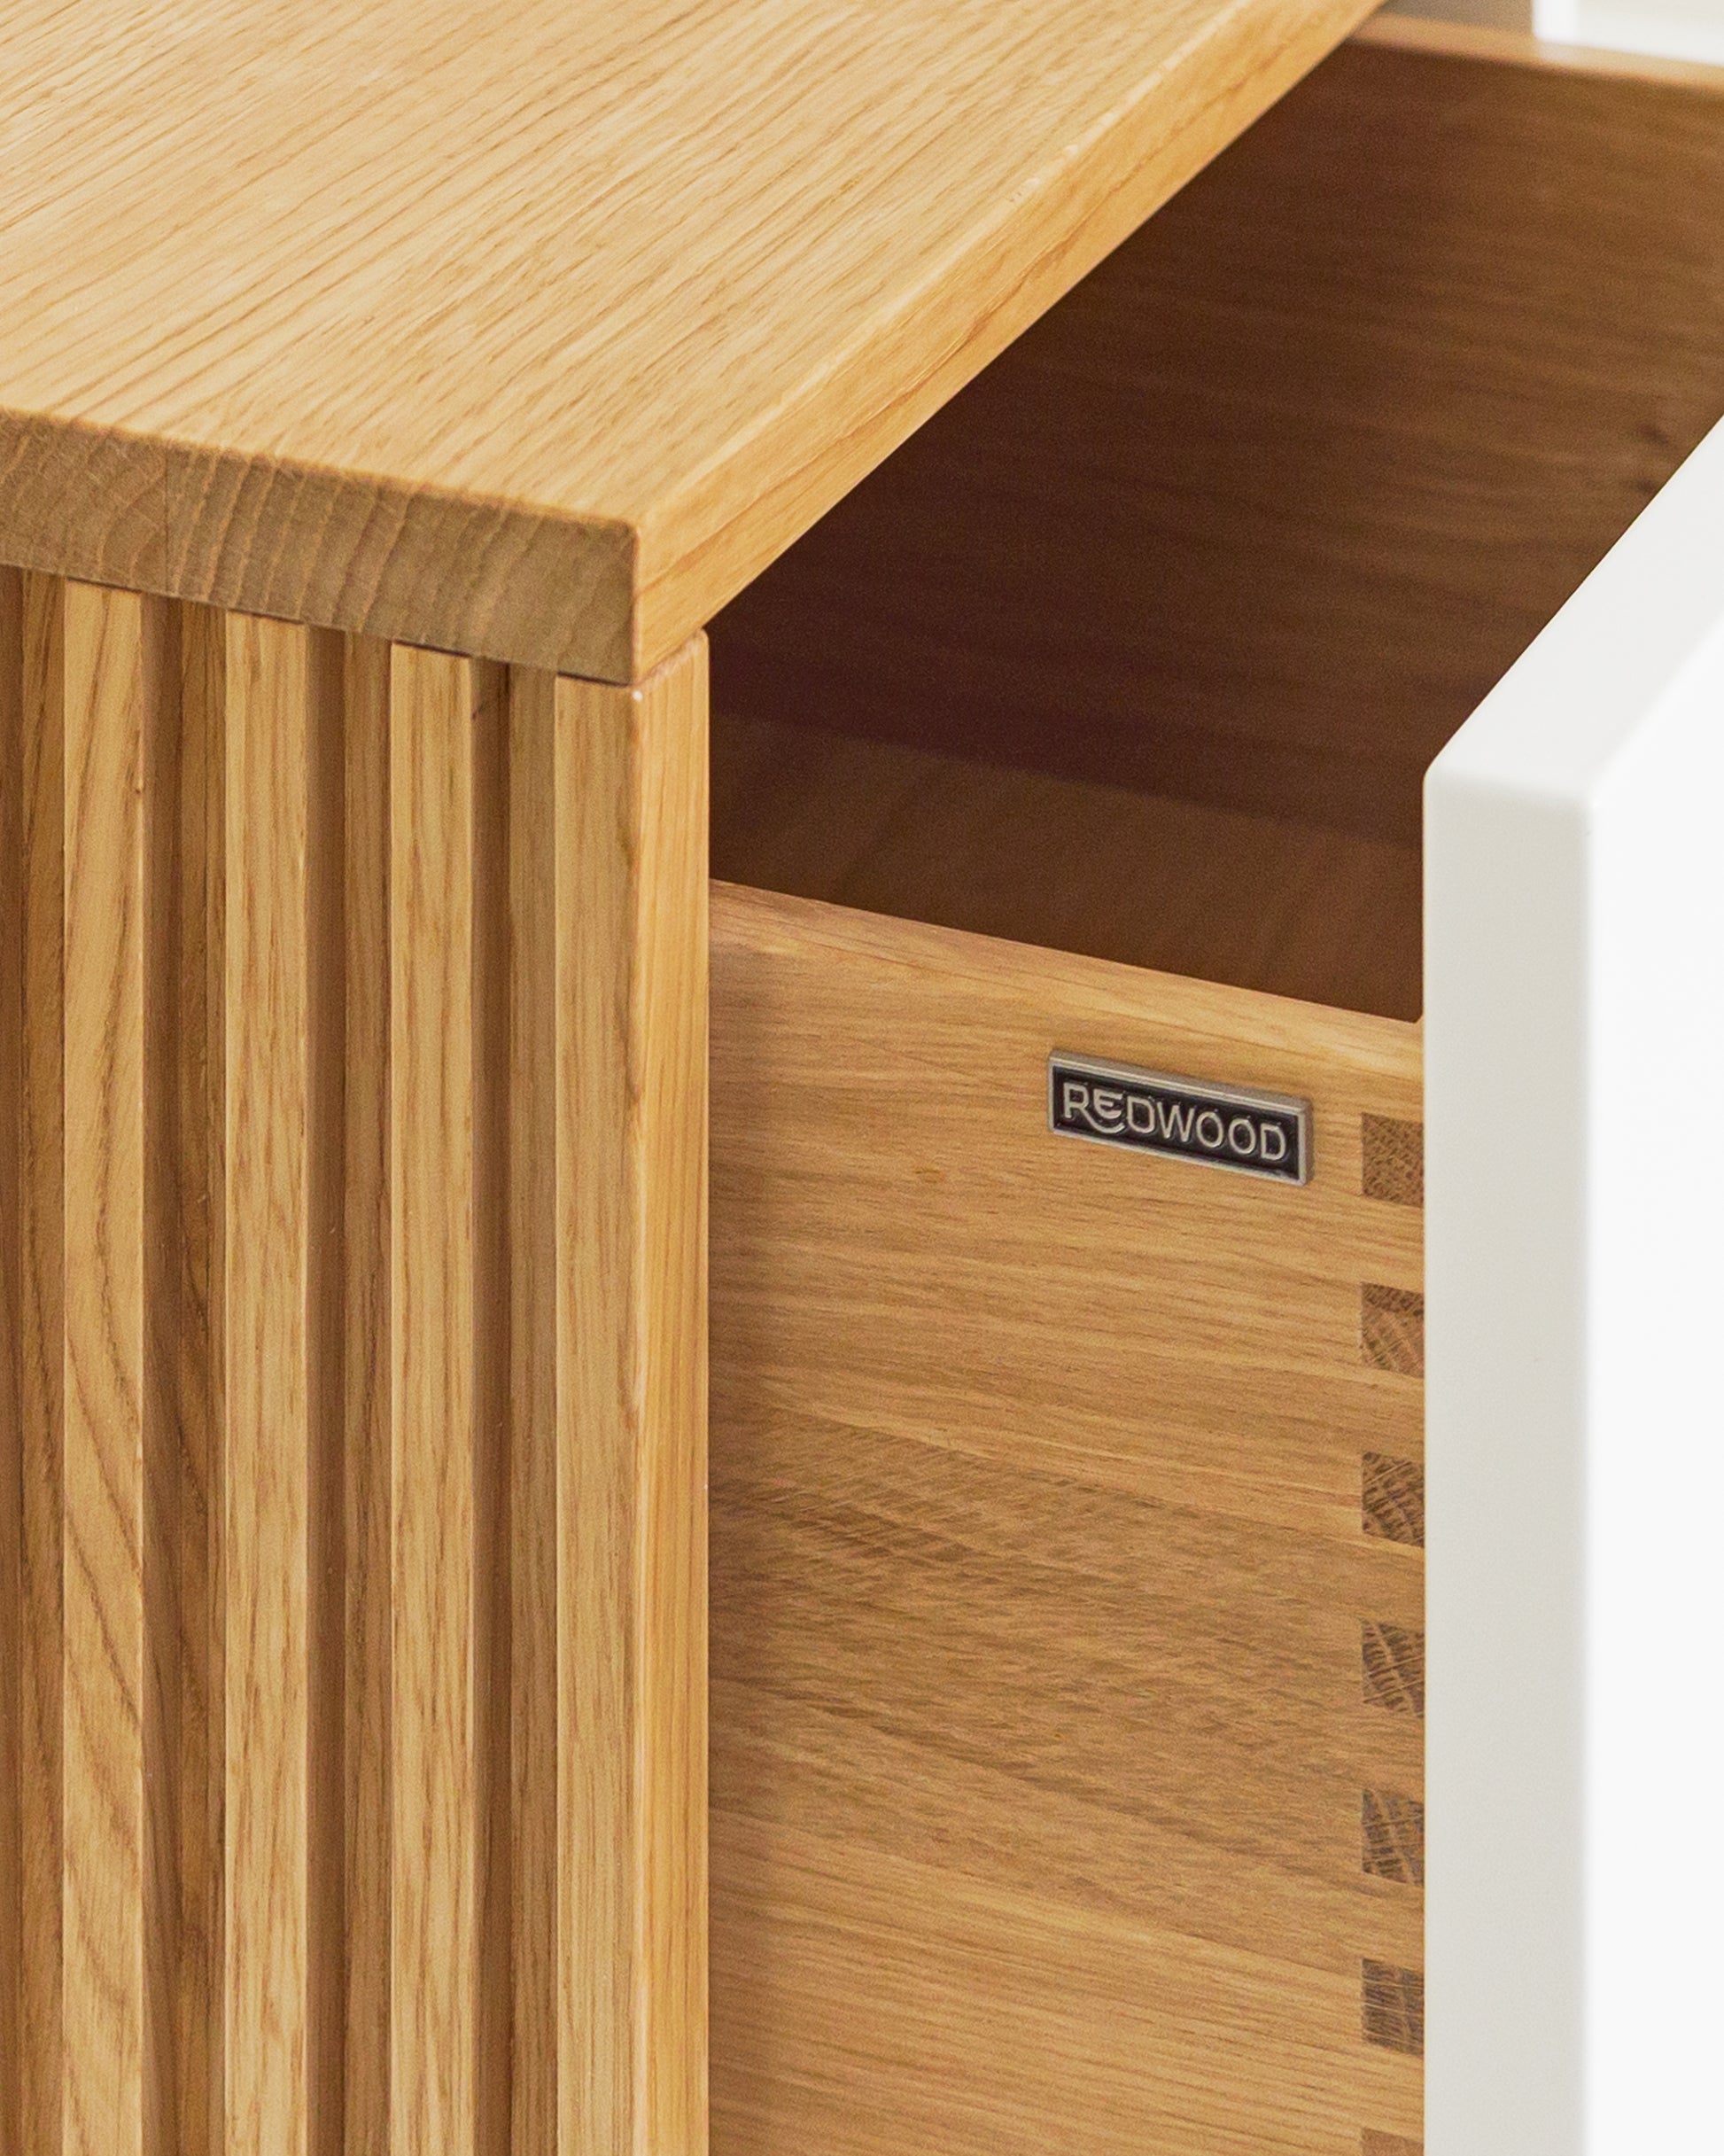 Sideboard in Eiche weiß:Schubladen in Massivholz:Die Verwendung von Massivholz für die Schubladen und die unterseitige (also nicht sichtbare) Befestigung der Auszüge sorgen nicht nur für ein hochwertiges Design, sondern auch für maximale Stabilität und Langlebigkeit.